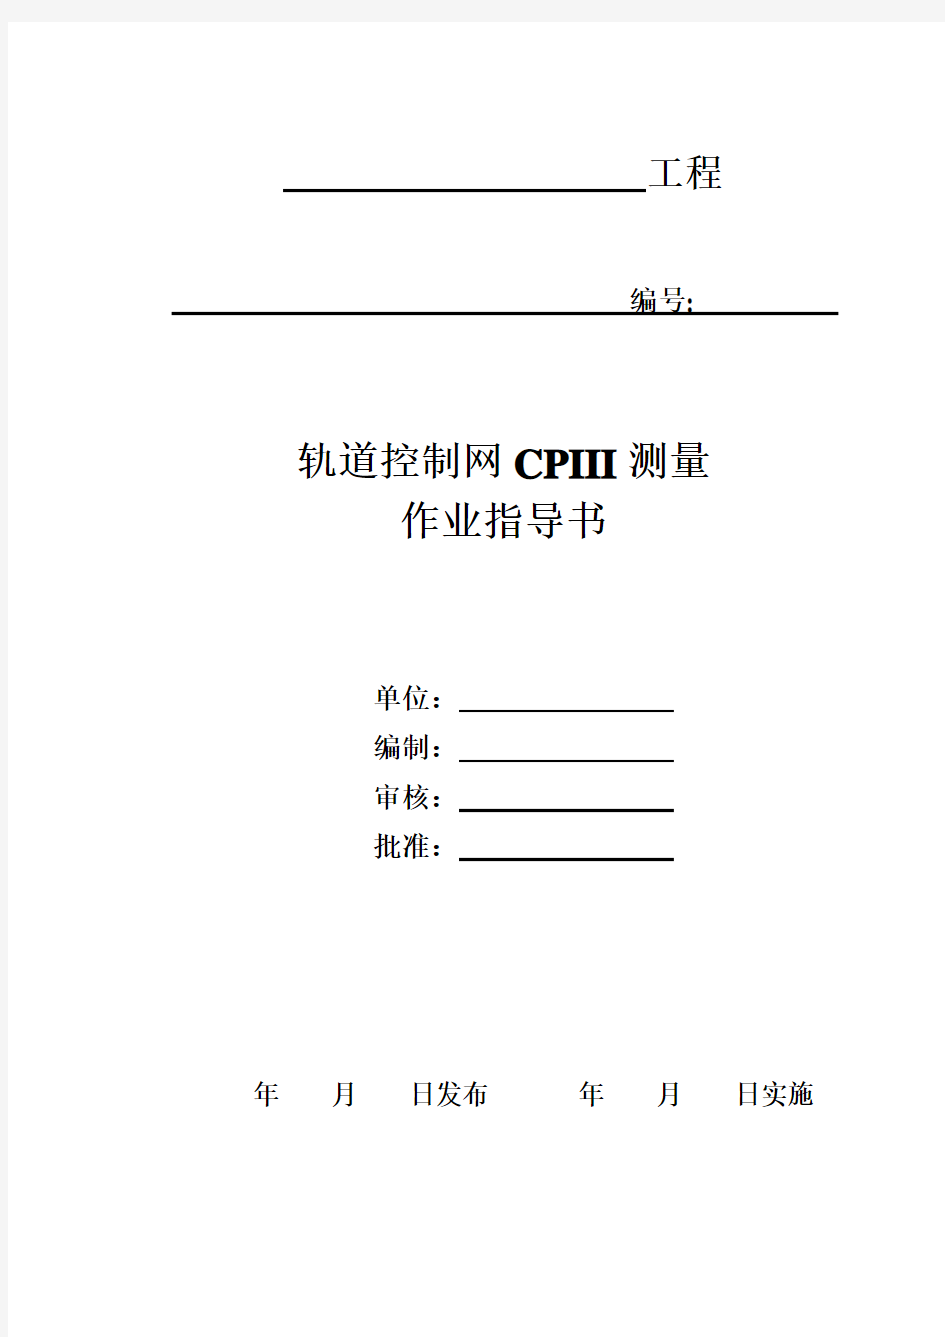 轨道控制网CPIII测量作业指导书(修改完成)